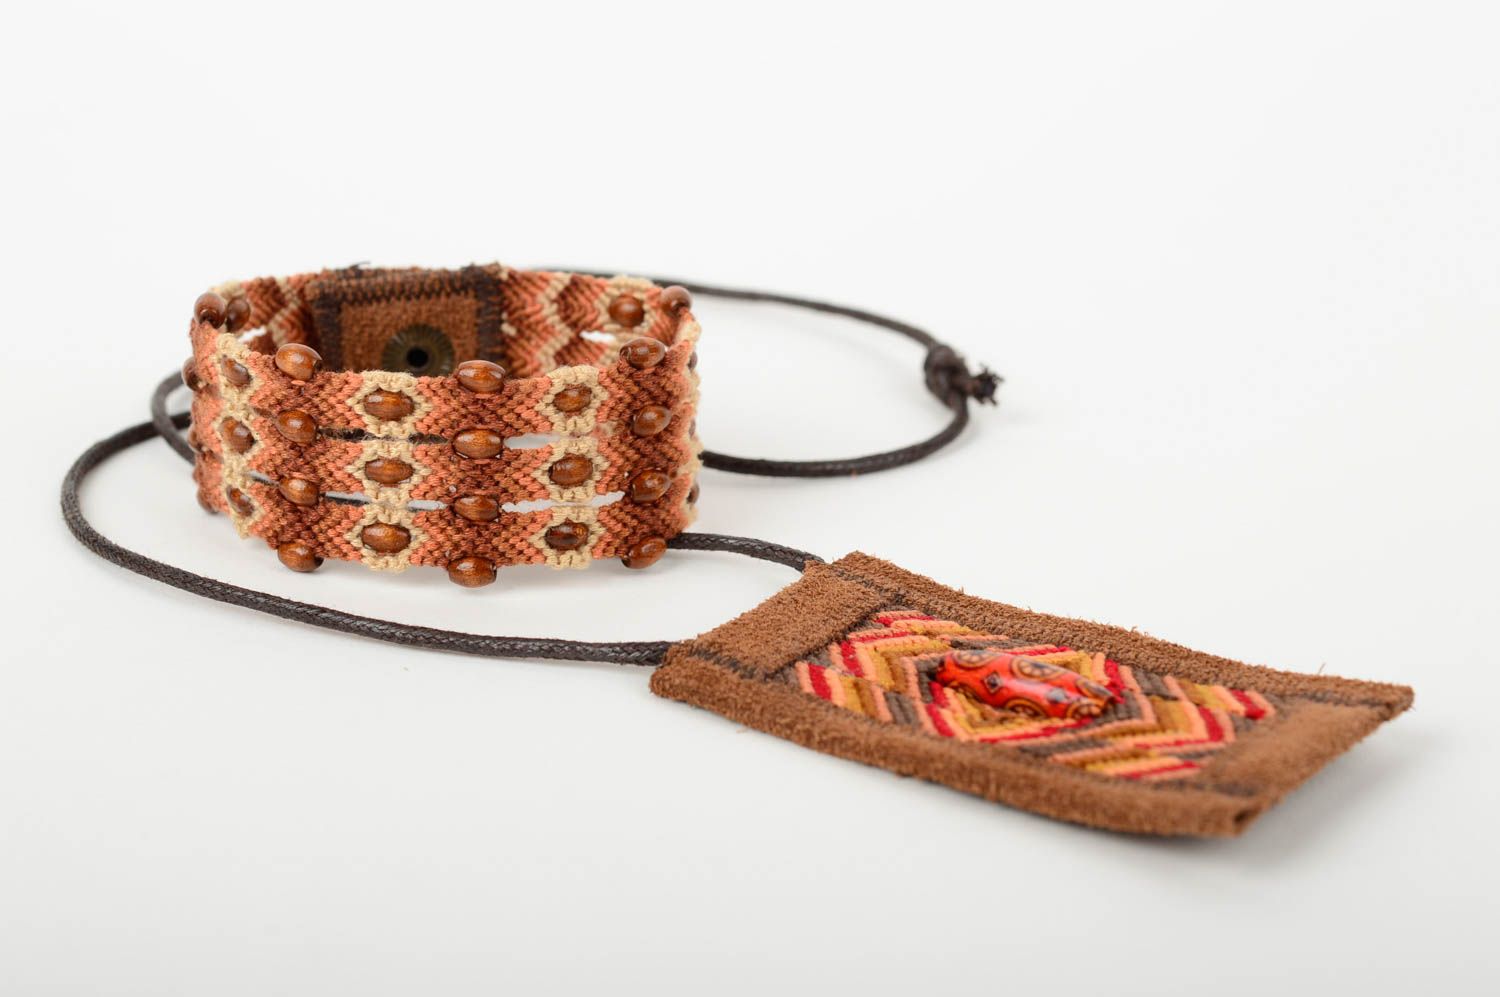 Macrame bijouterie handmade woven pendant friendship bracelet for girls photo 3